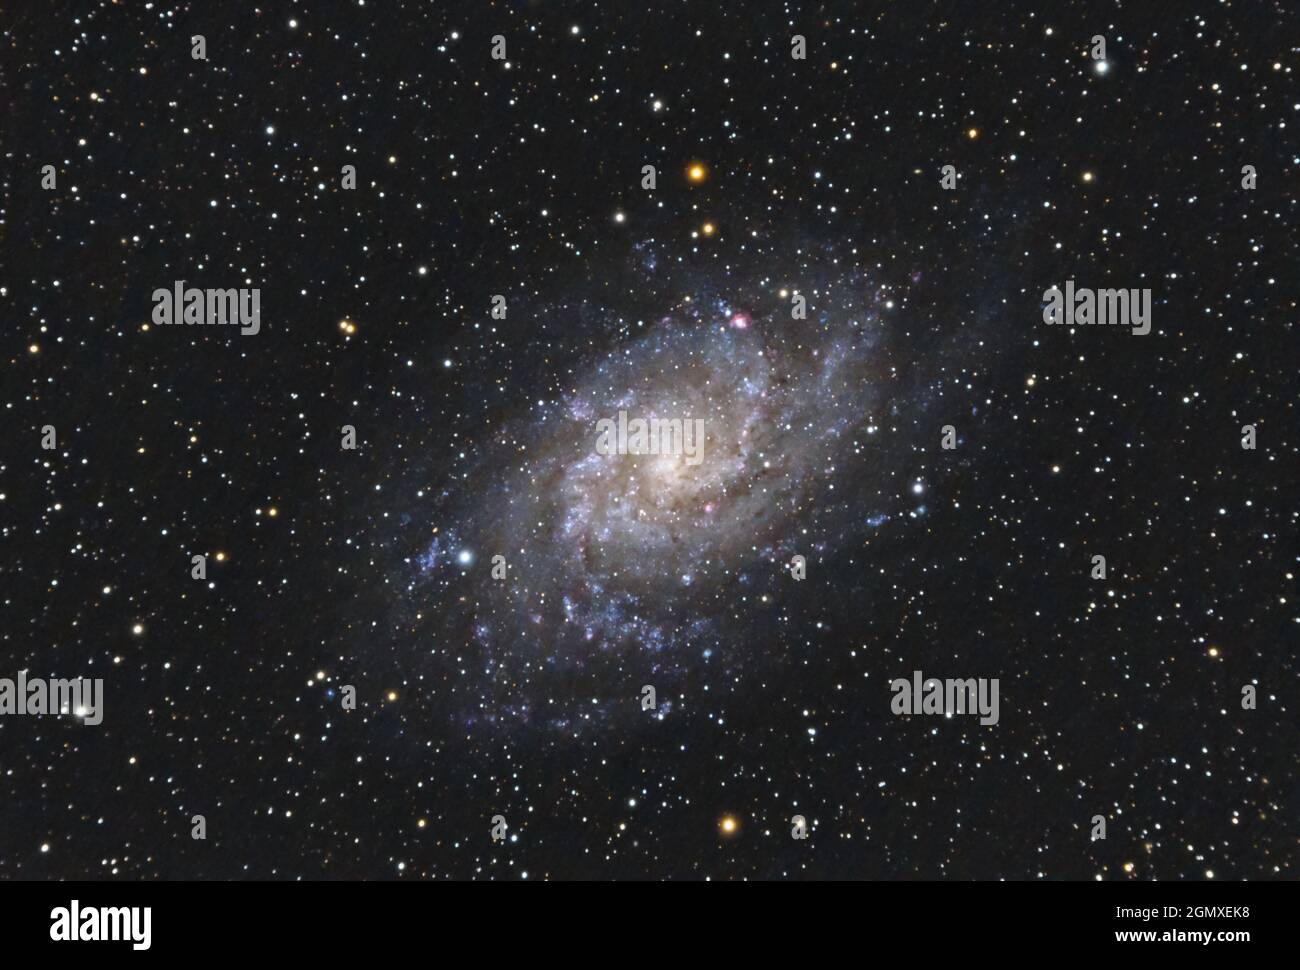 La Galaxia de Triangulum M33 en la constelación de Triangulum con Nebulosa, Cúmulo Abierto, Cúmulo Globular y estrellas capturan con un telescopio refractario Foto de stock